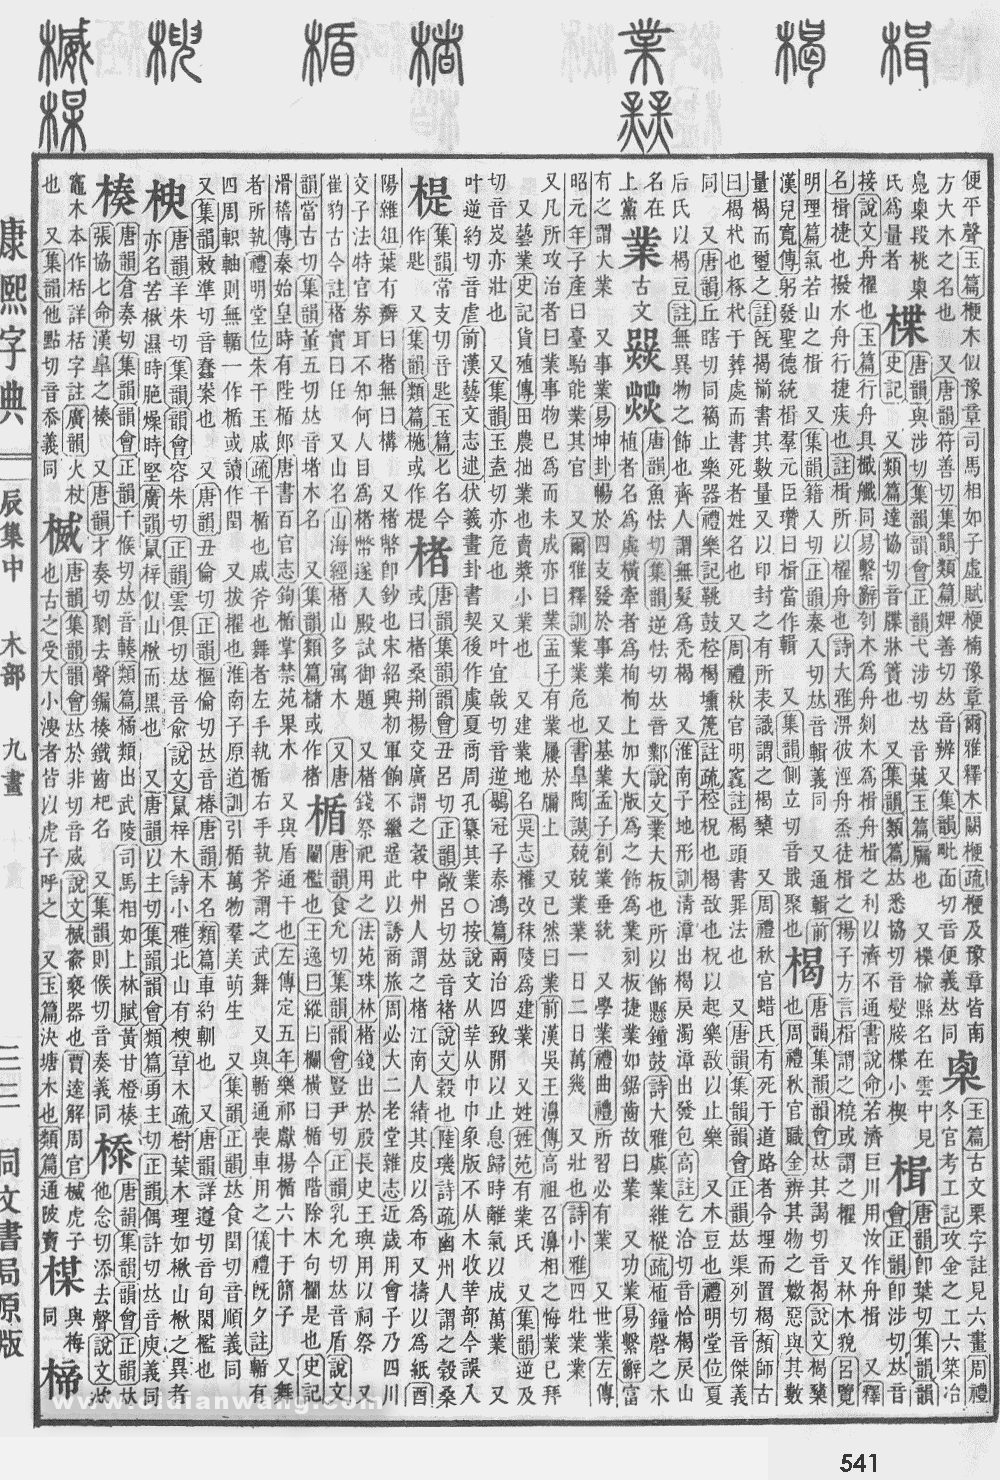 康熙字典掃描版第541頁